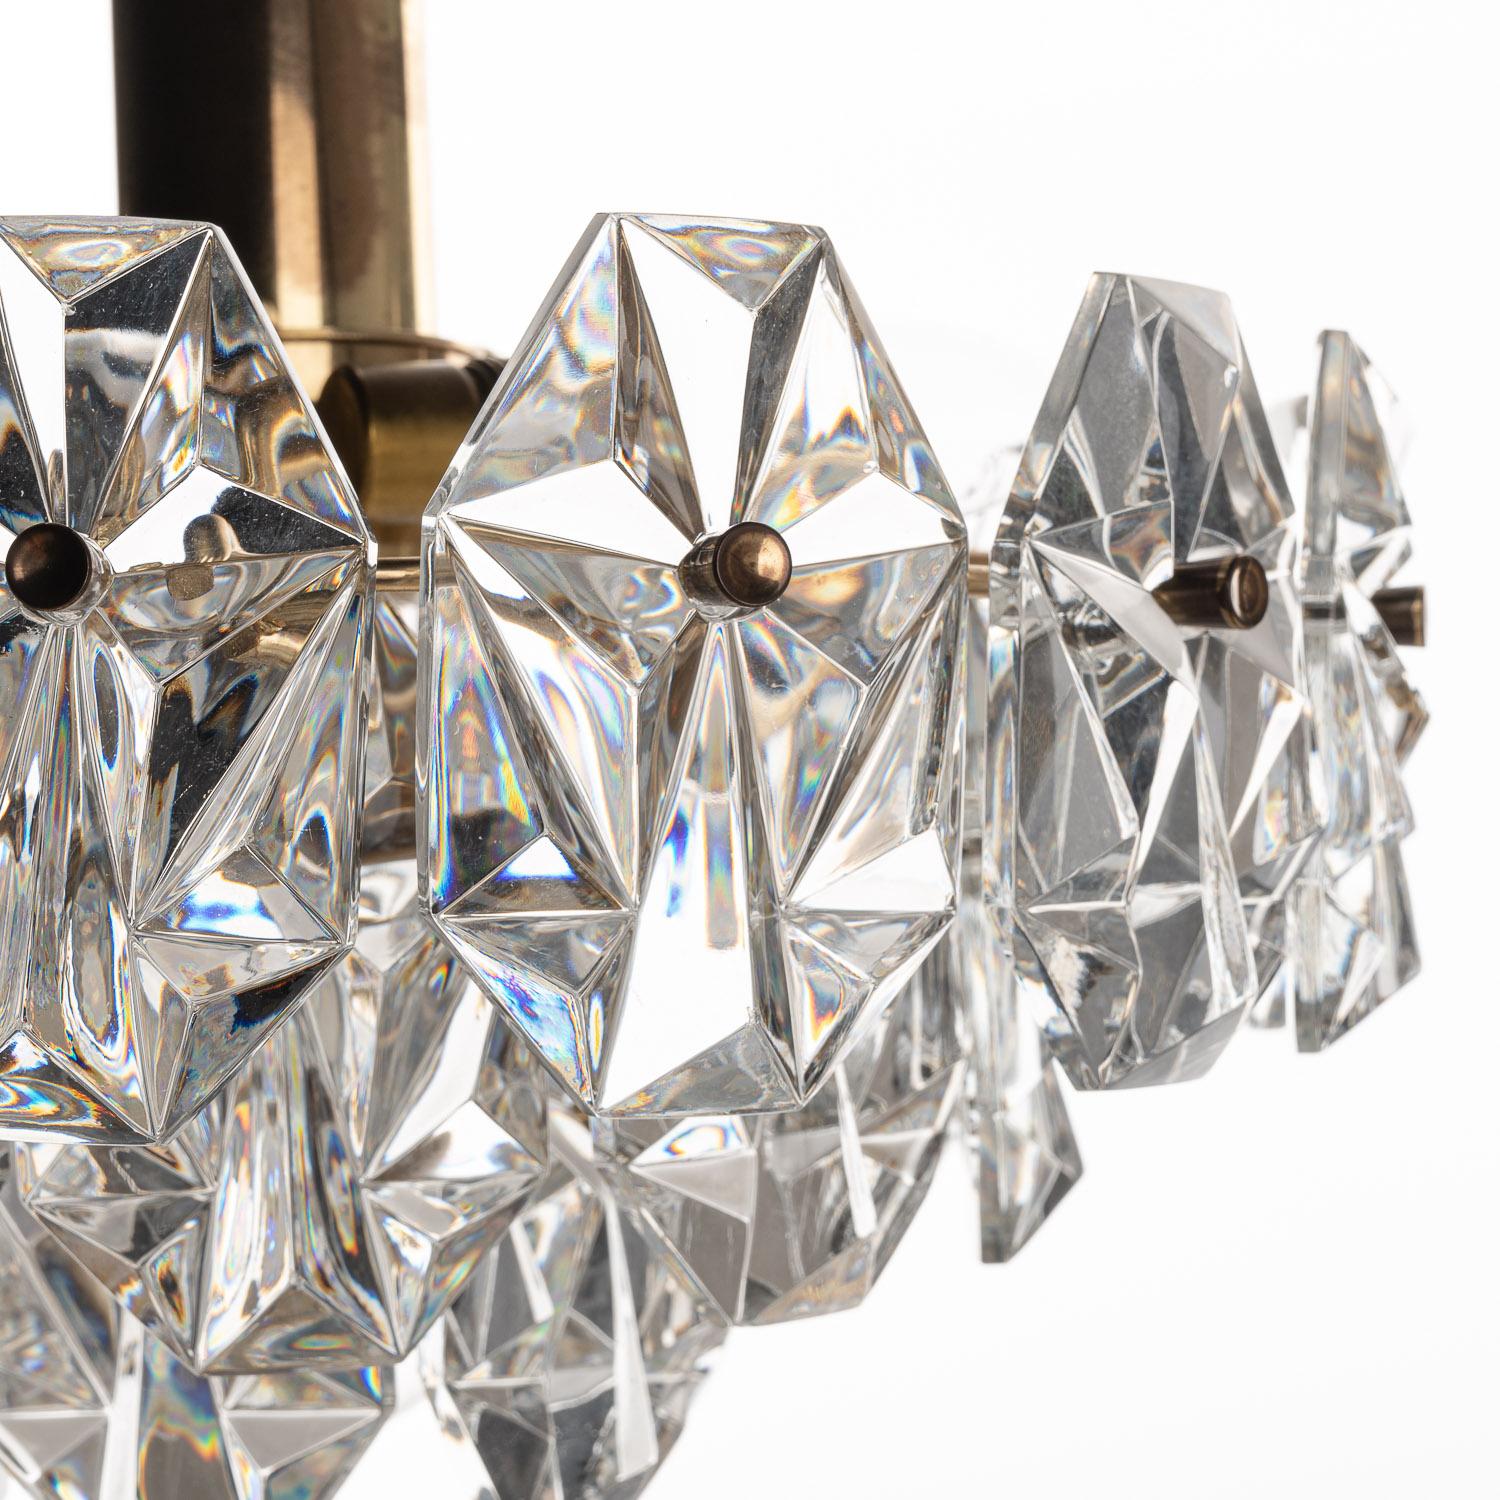 Eine klassische Kinkeldey-Lampe aus den 1960er Jahren, bei der Kupfer und Kristall zu einer opulenten Atmosphäre verschmelzen. Diese Lampe ist schon für sich genommen unglaublich stilvoll, wird aber erst durch die drei E14-Glühbirnen und eine